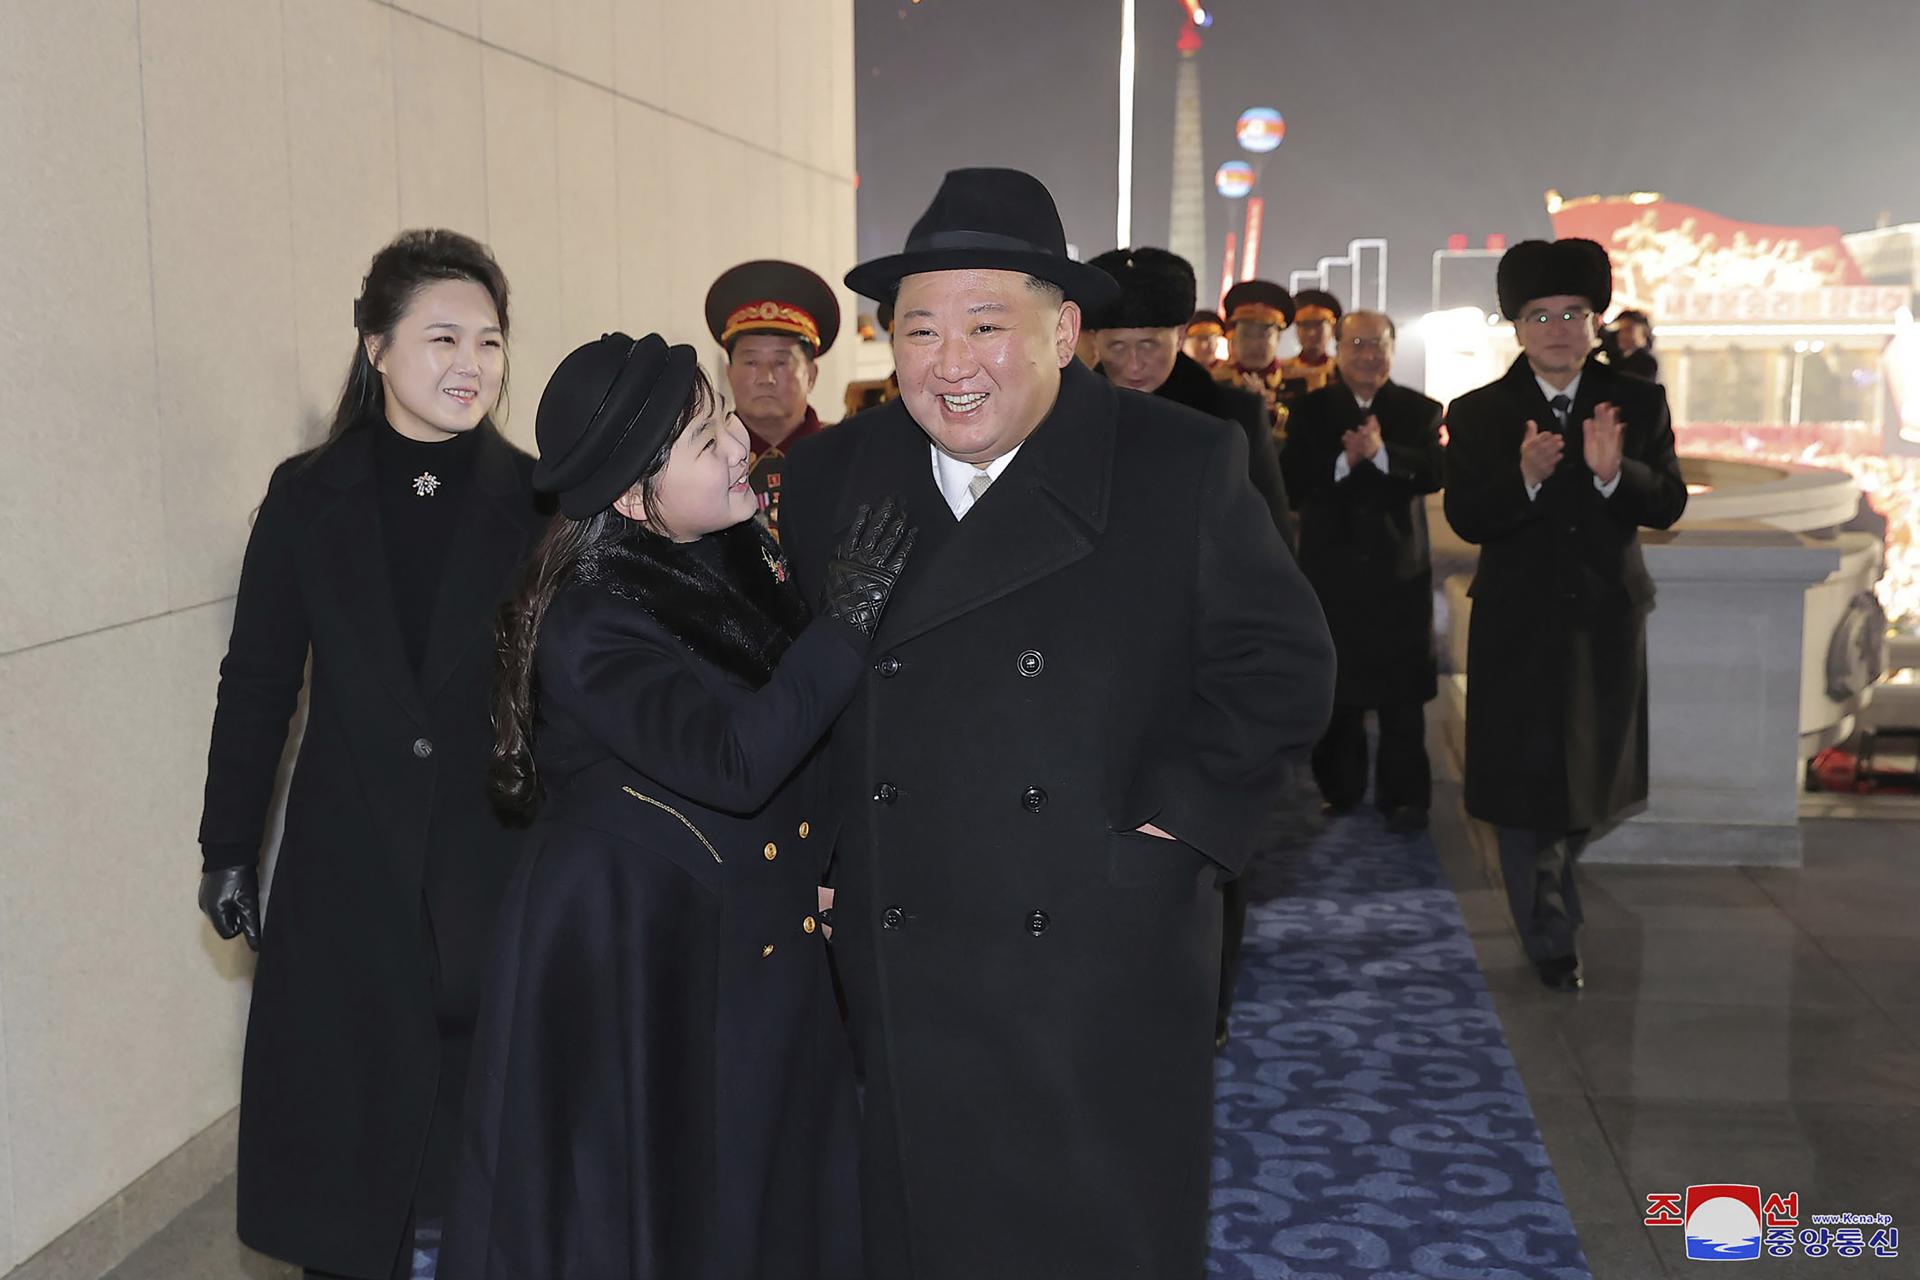 Kim Čong-un prišiel na futbalový zápas so svojou dcérou, čoraz častejšie ju ukazuje verejnosti